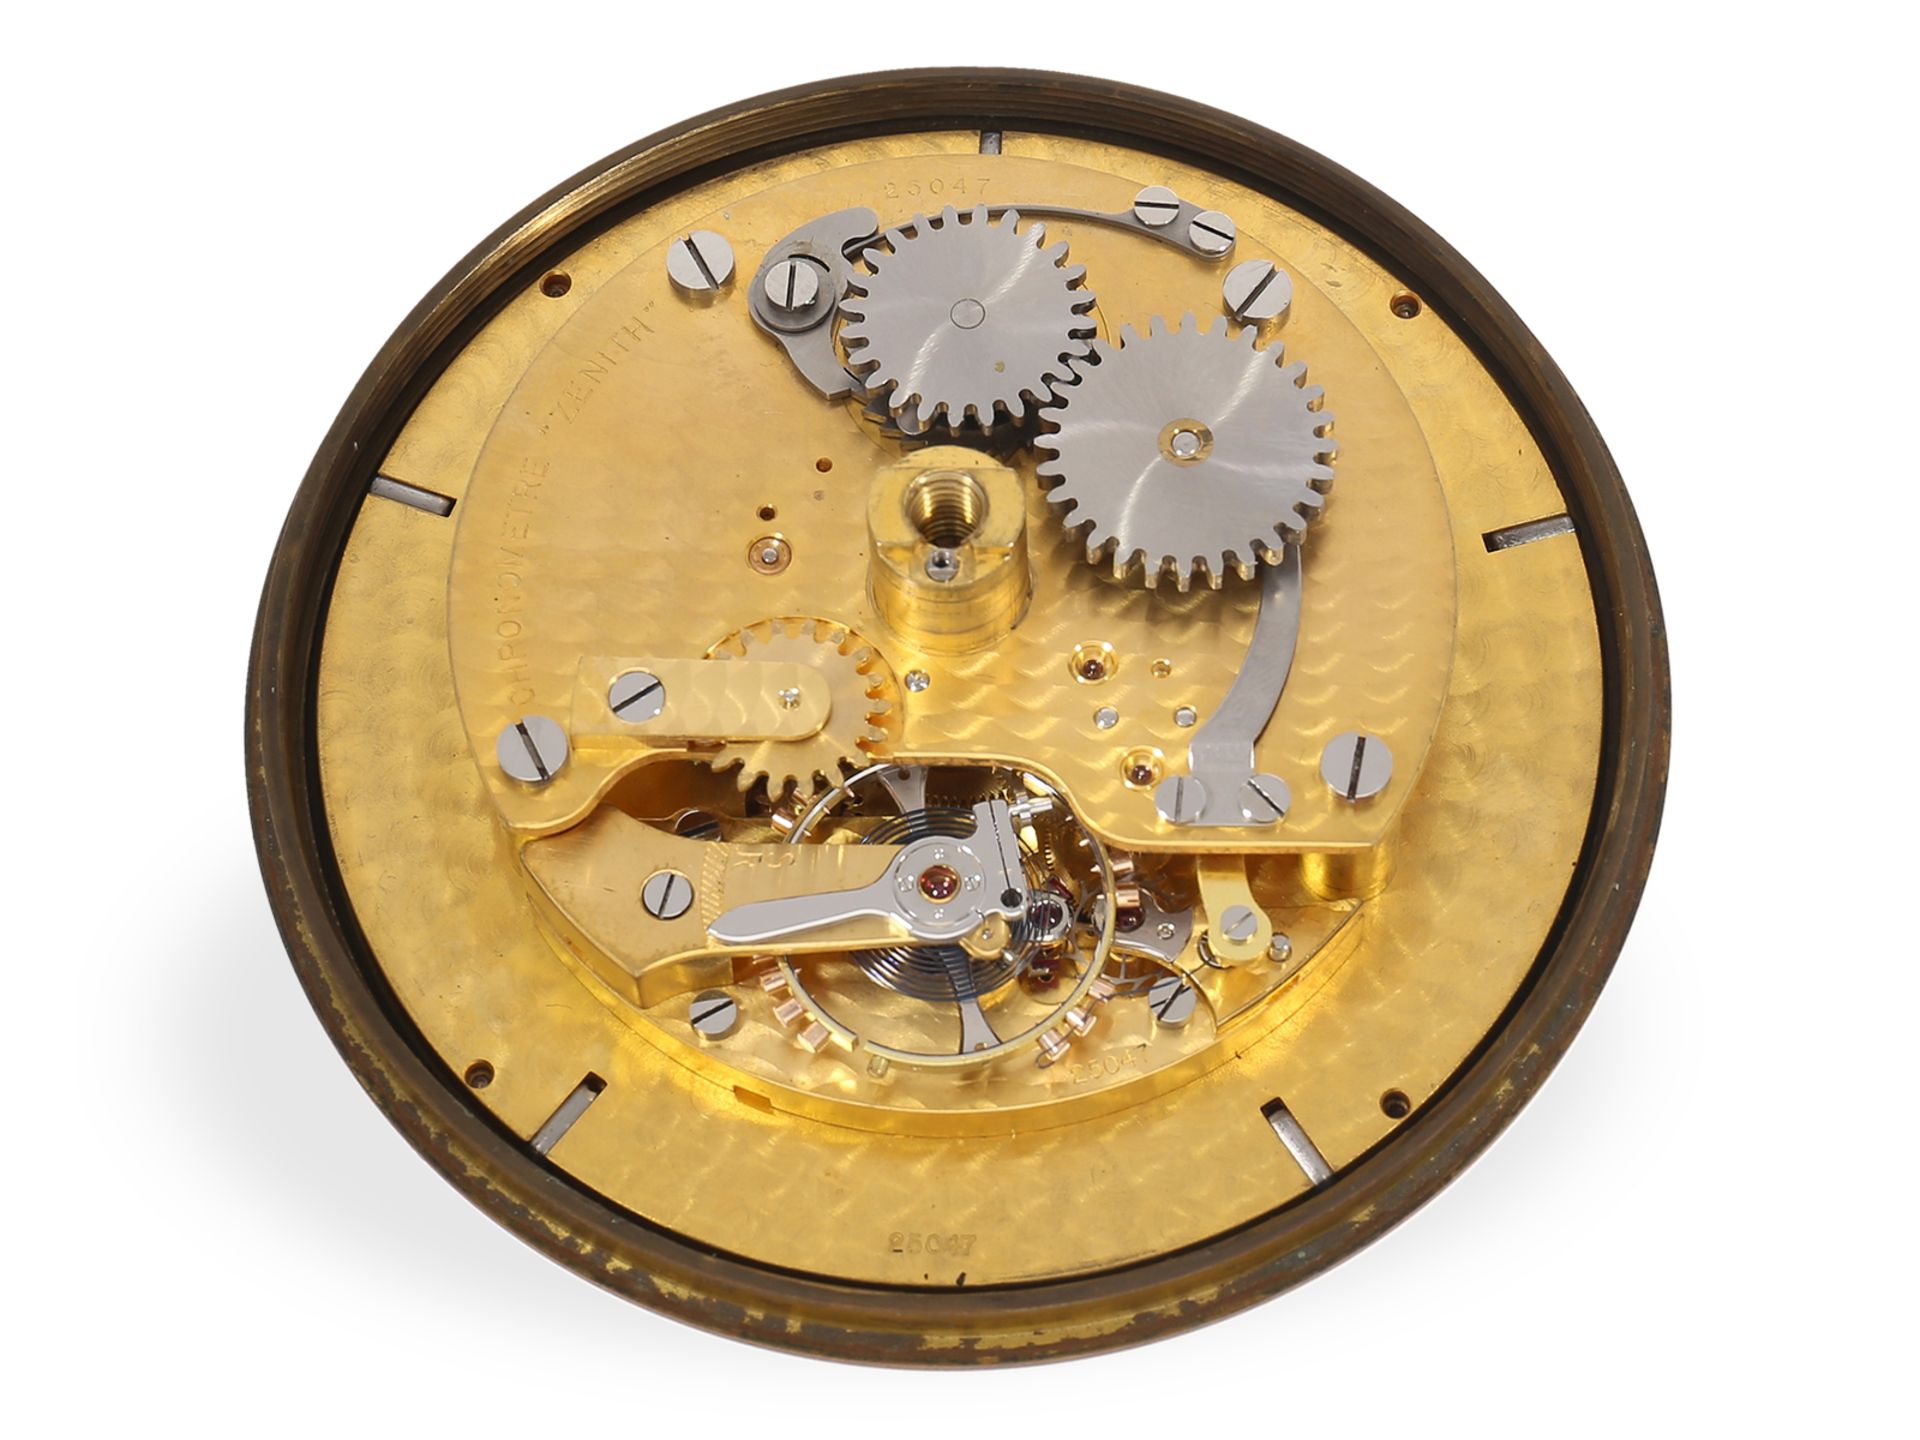 Hervorragend erhaltenes Zenith Marinechronometer, 30er Jahre - Bild 5 aus 7